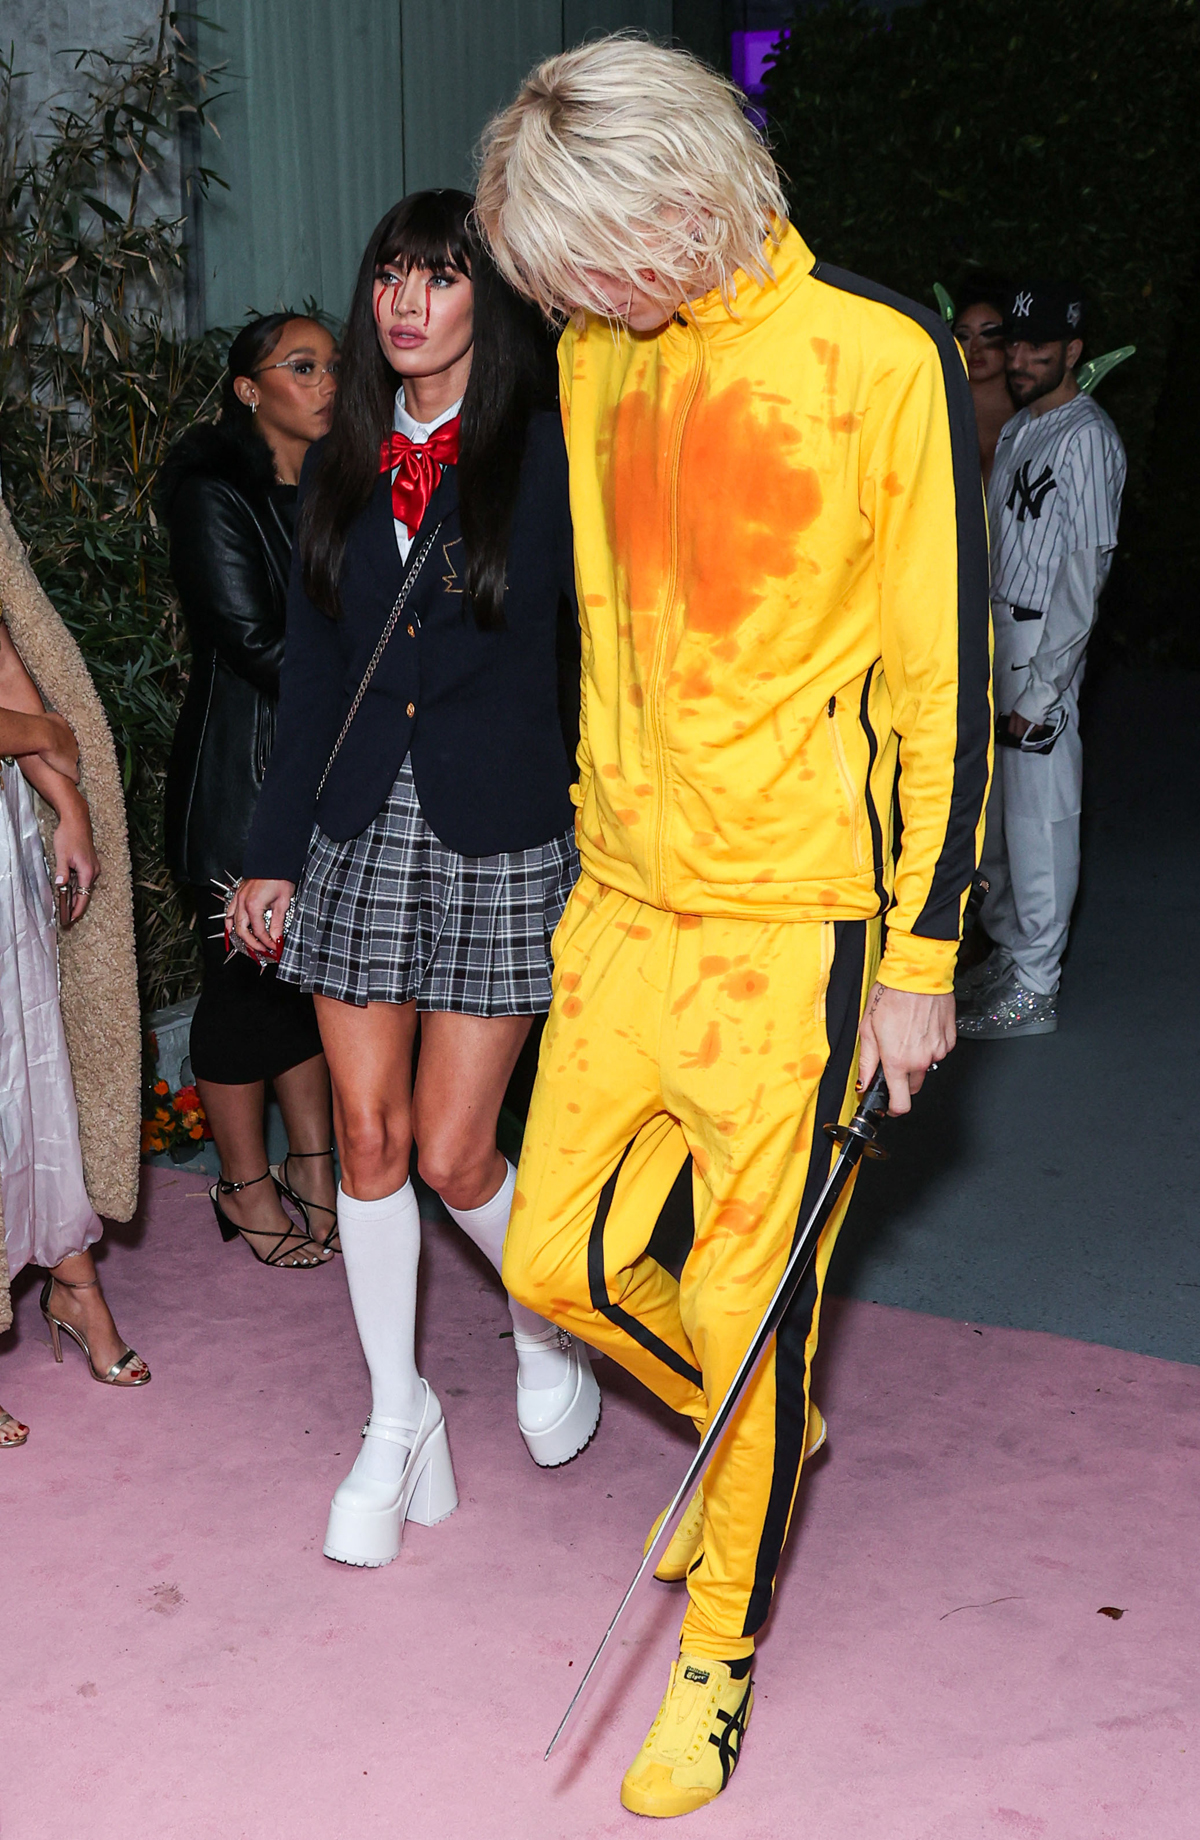 Megan Fox and MGK in Kill Bill costume Halloween 2023